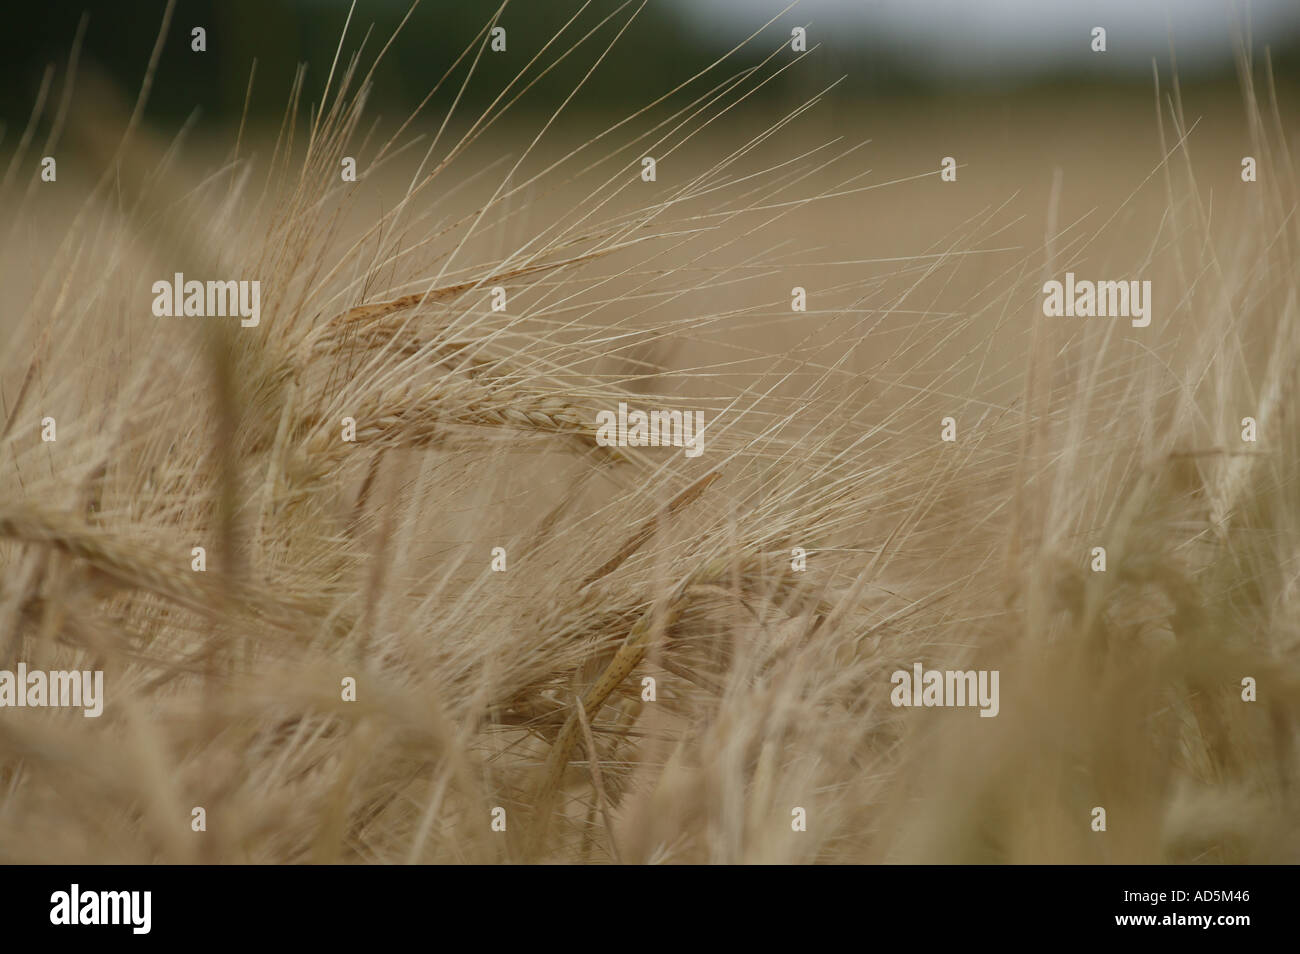 horizontale Details der kommerziellen europäischen Gerste Nutzpflanze im heißen Sommer mit Hedge-Strich in der weit Landschaft Stockfoto